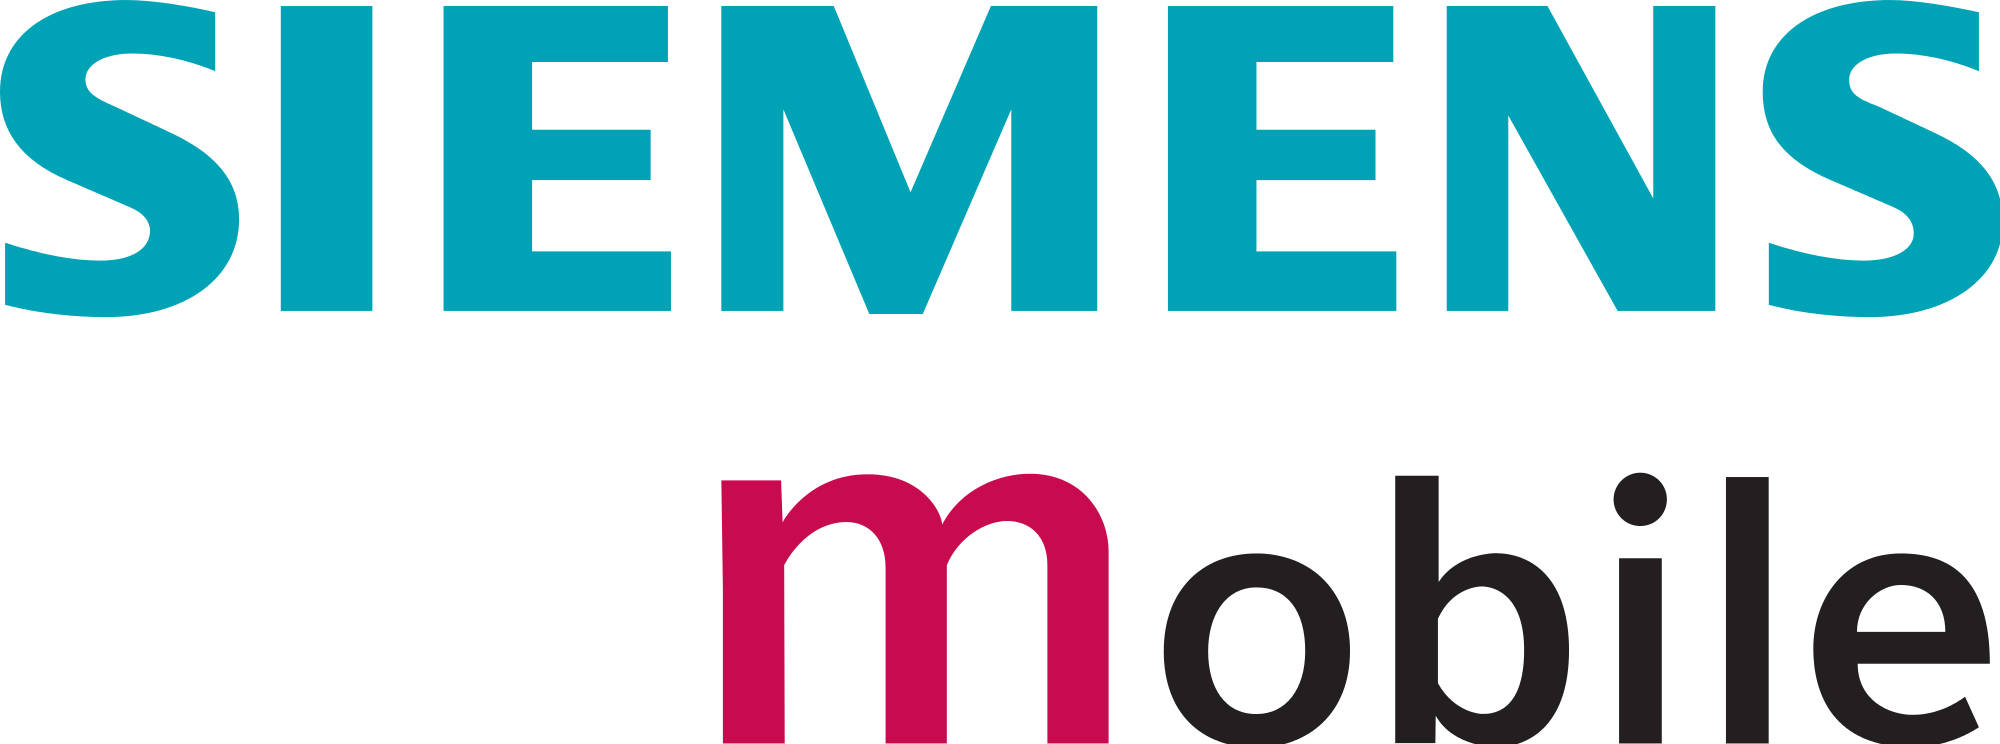 Siemens Careers